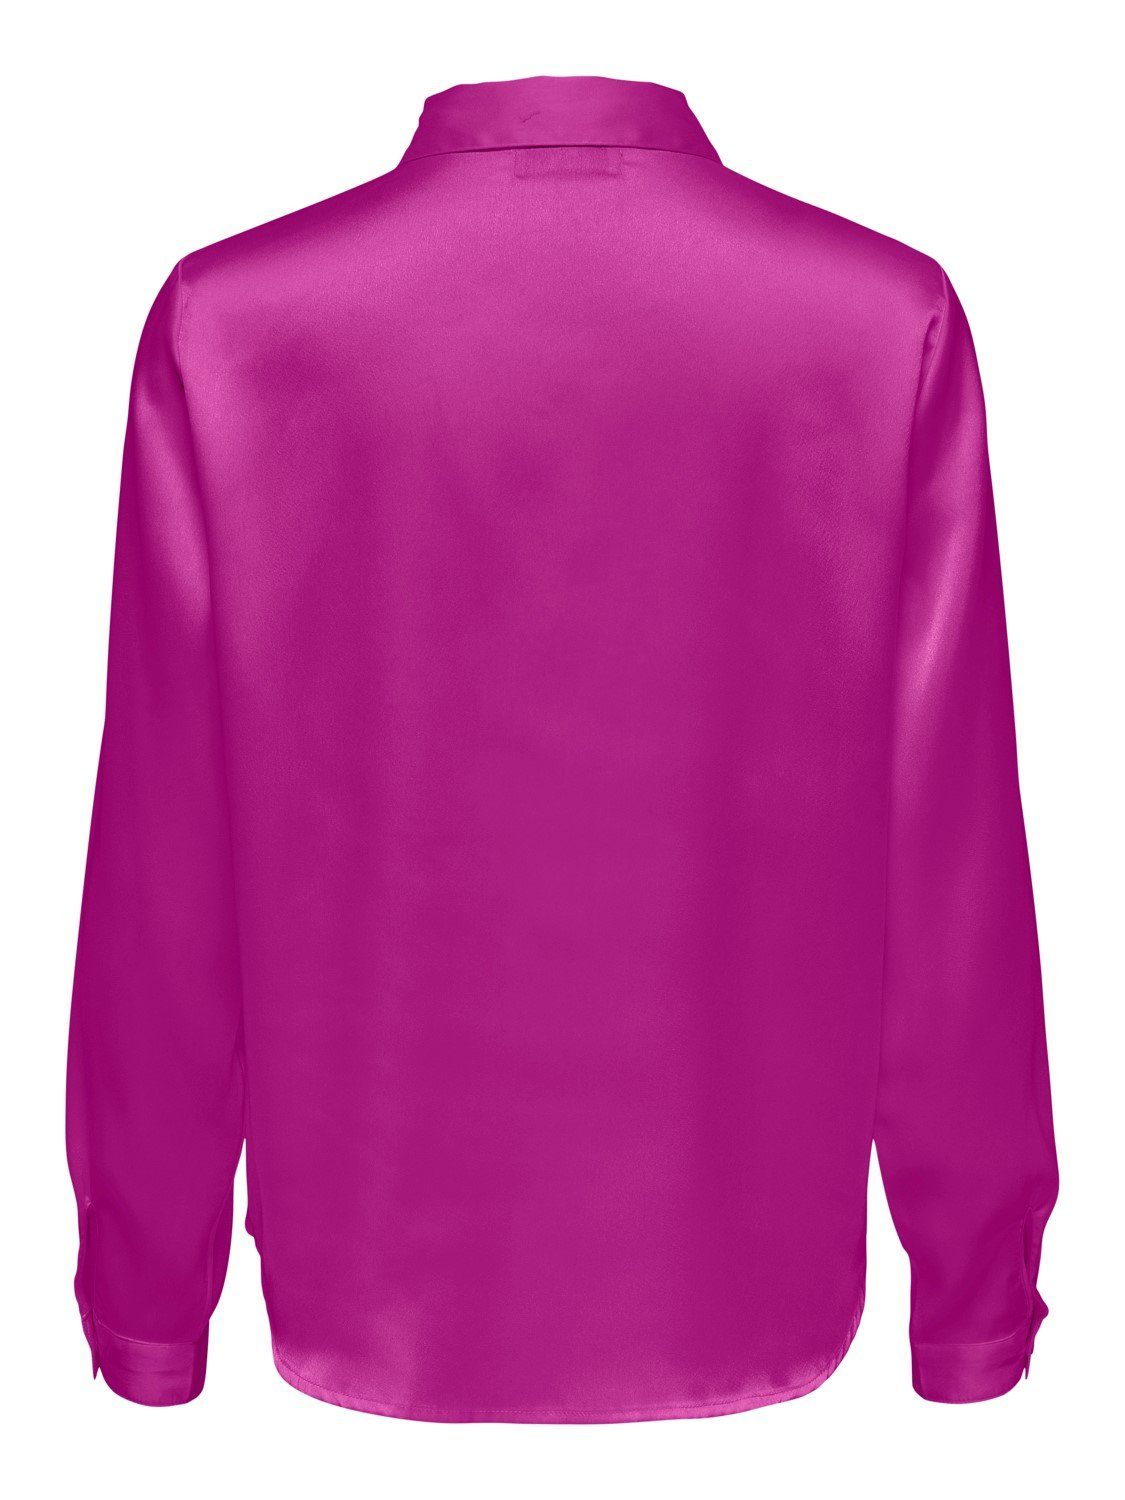 JACQUELINE de Hemd Tunika Langarm Business Lila YONG Blusenshirt 4470 Bluse JDYFIFI Satin in Elegante